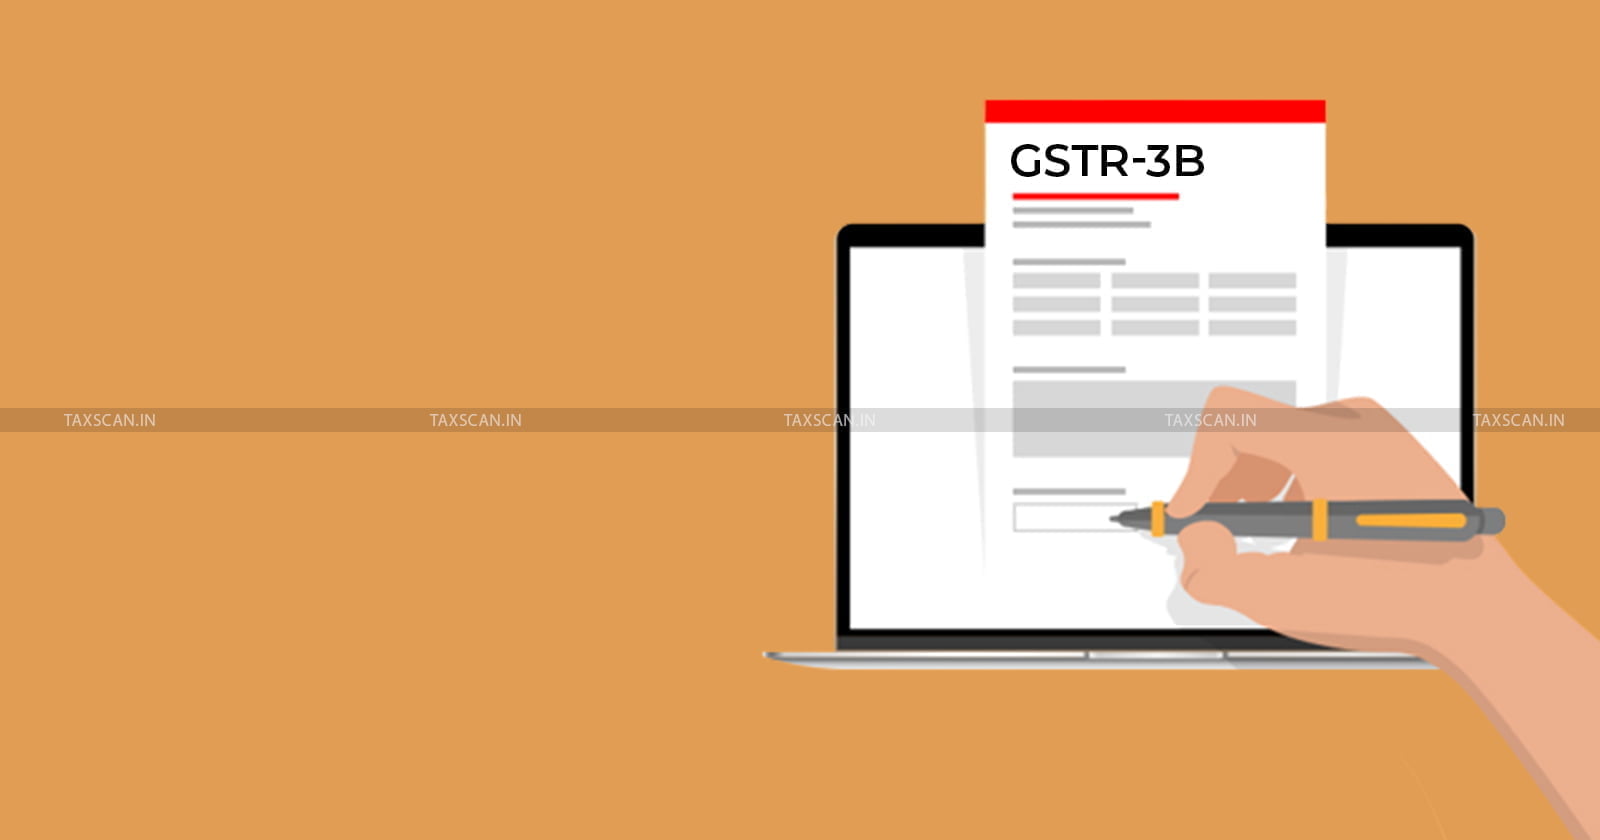 GSTN - Important Advisory - ITC - GSTR-3B - GST Portal - GST - Input Tax Credit - Negative Value - taxscan